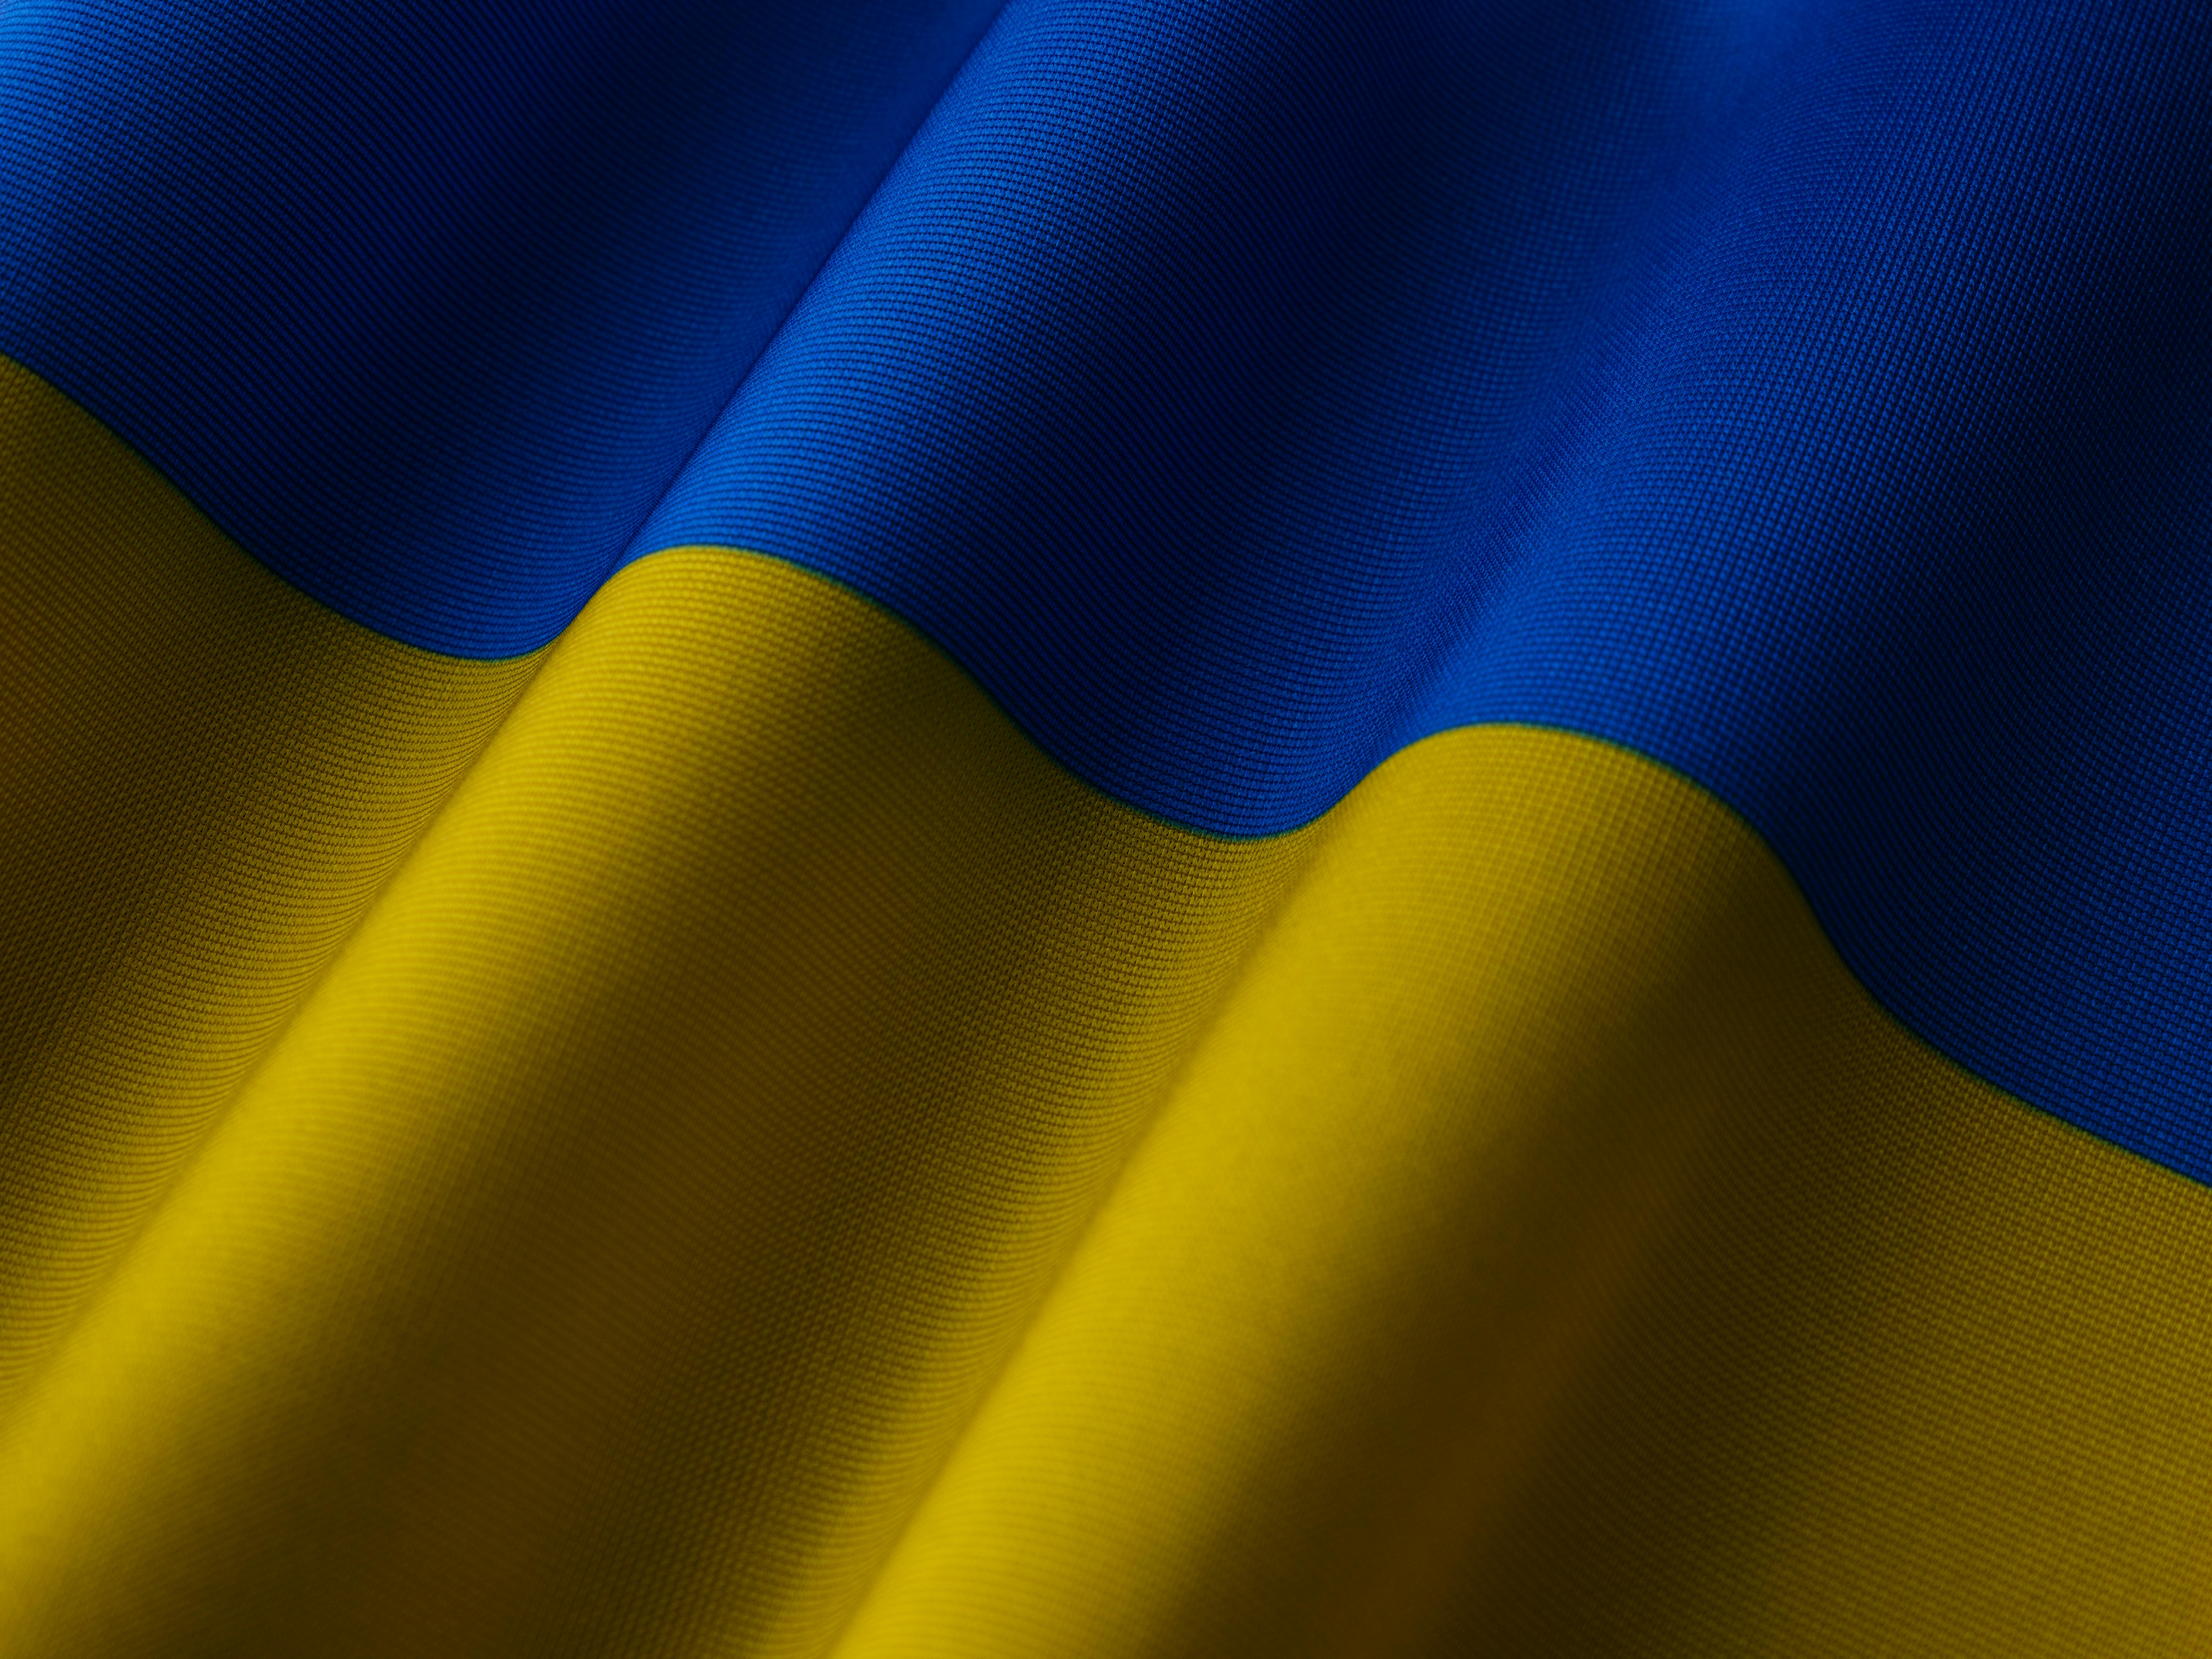 Theme with Ukraine flag httpsgalaxystoregUkr Static lock screen  wallpaper for Golden Ukraine by Volter theme My Theme  Ukrainian art  Ukraine Ukraine flag